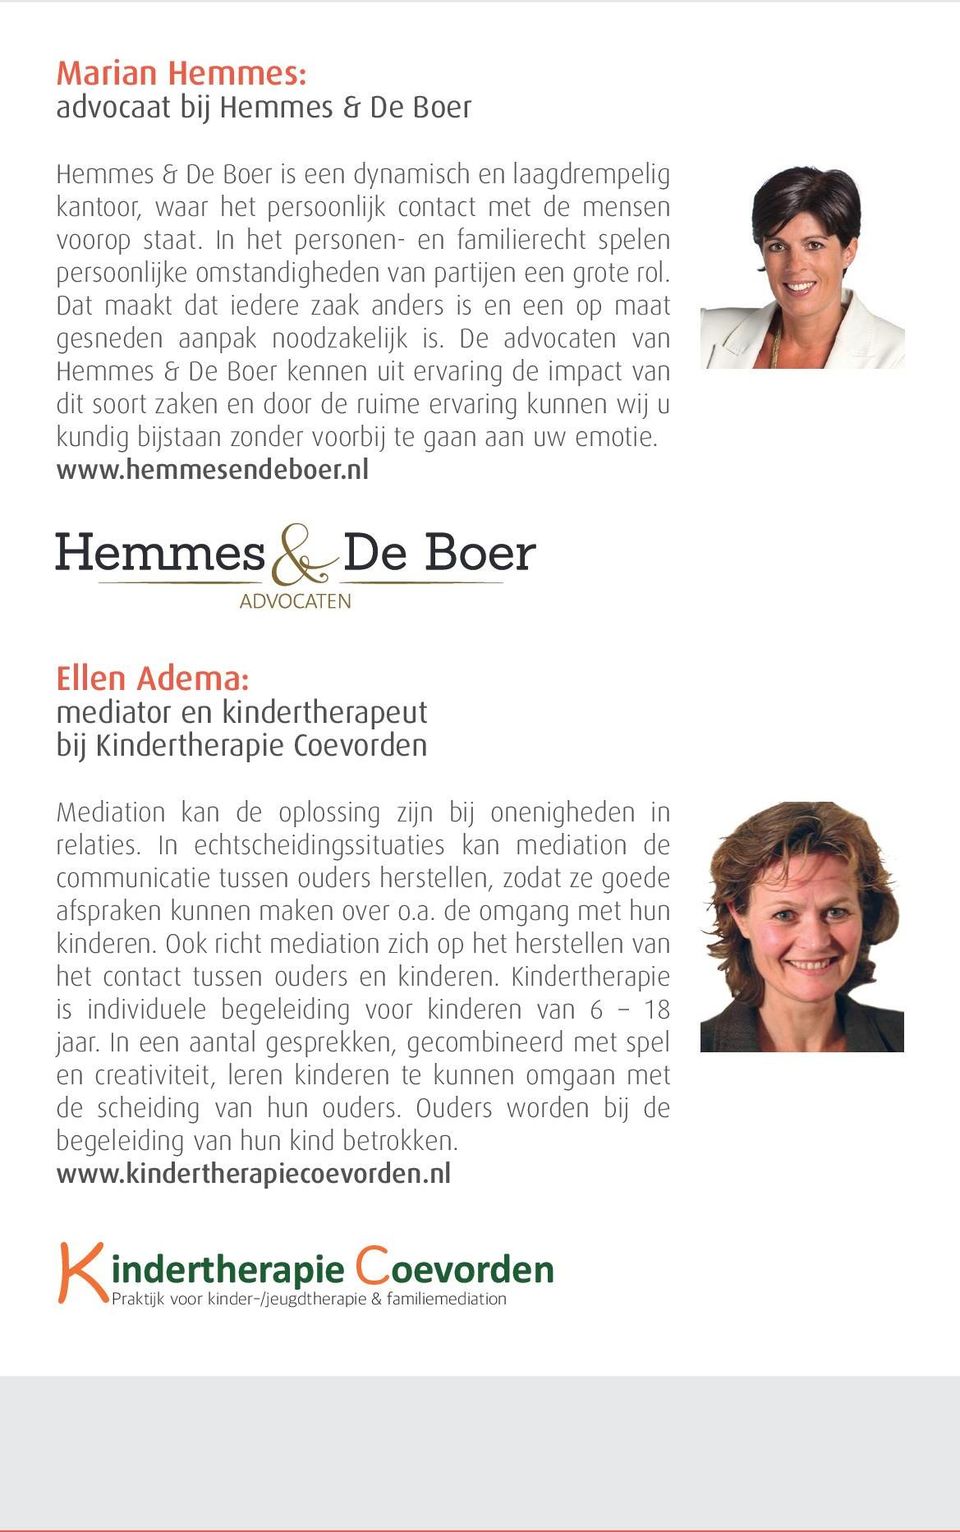 De advocaten van Hemmes & De Boer kennen uit ervaring de impact van dit soort zaken en door de ruime ervaring kunnen wij u kundig bijstaan zonder voorbij te gaan aan uw emotie. www.hemmesendeboer.